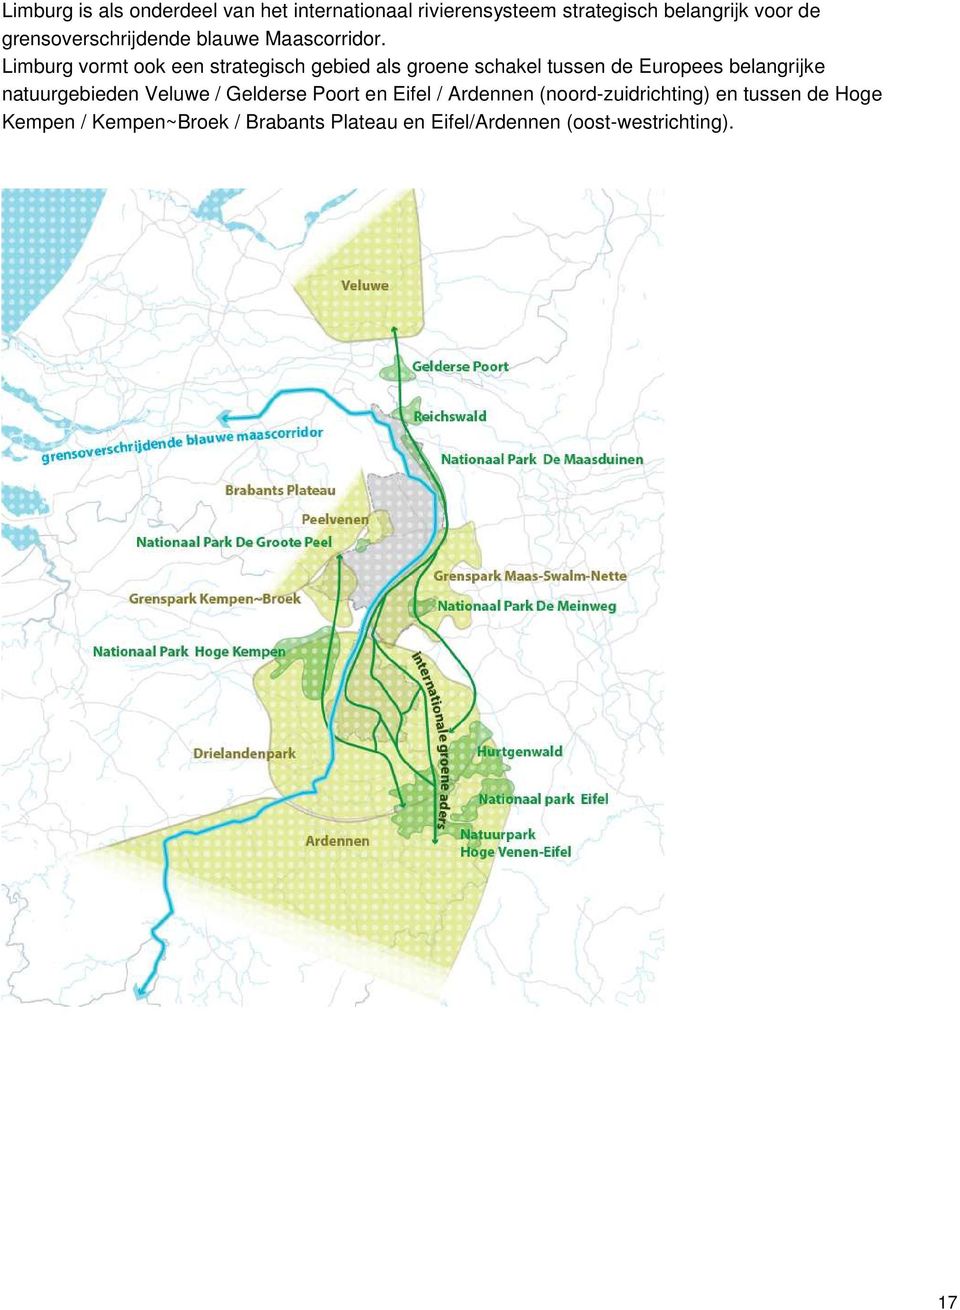 Limburg vormt ook een strategisch gebied als groene schakel tussen de Europees belangrijke